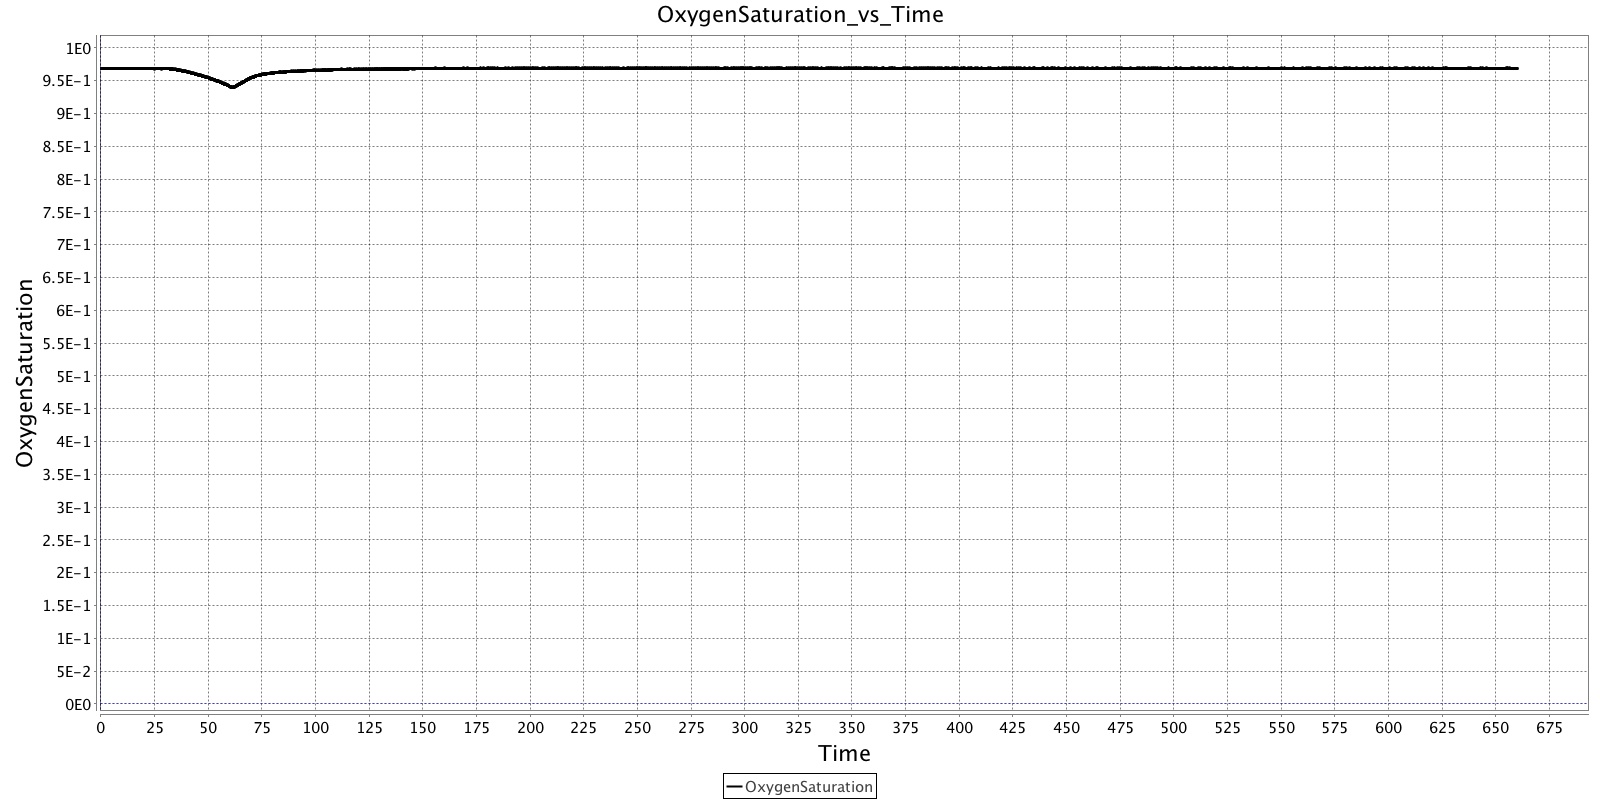 OxygenSaturation_vs_Time.jpg